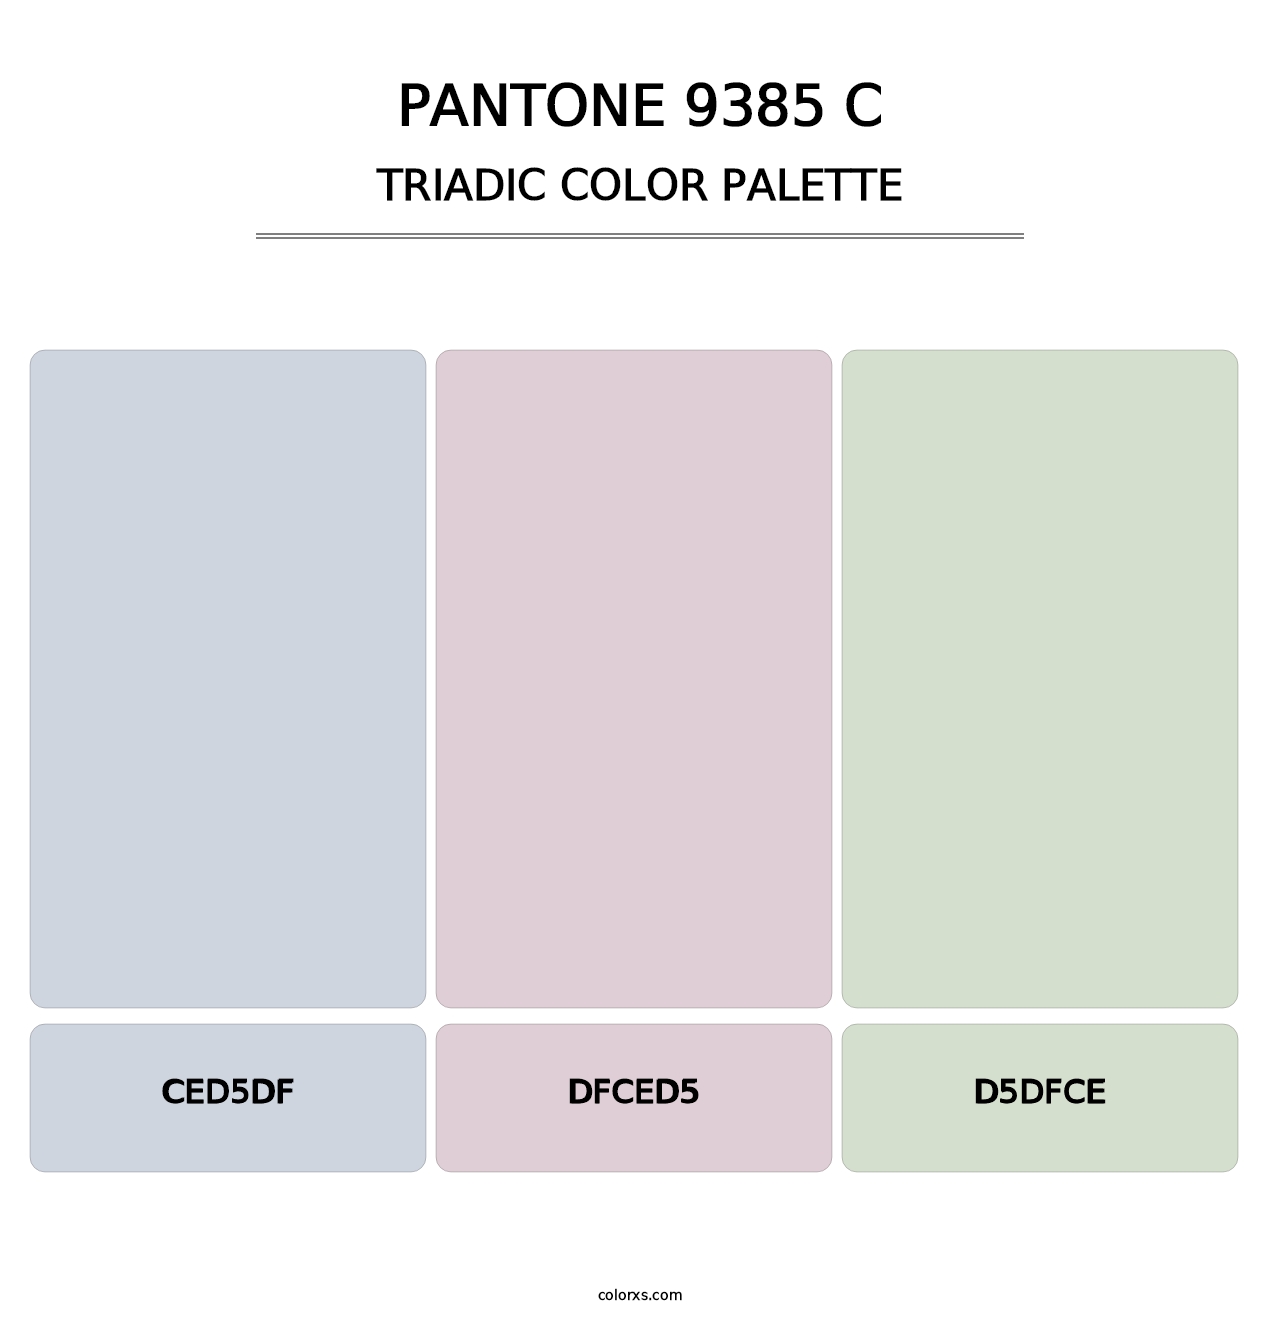 PANTONE 9385 C - Triadic Color Palette